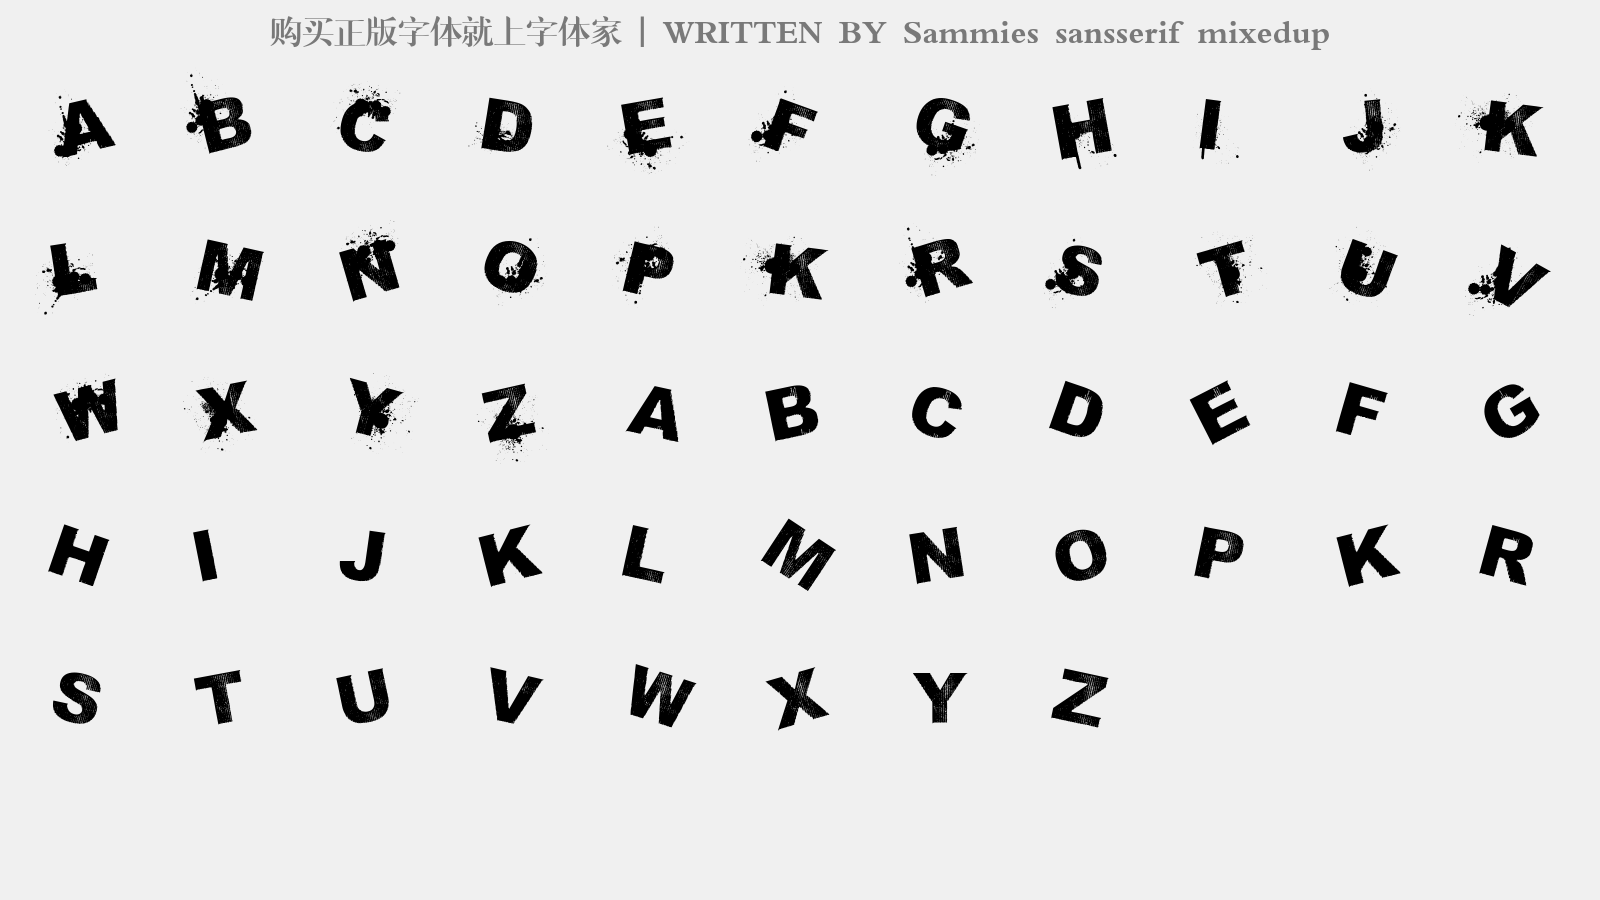 Sammies sansserif mixedup - 大写字母/小写字母/数字